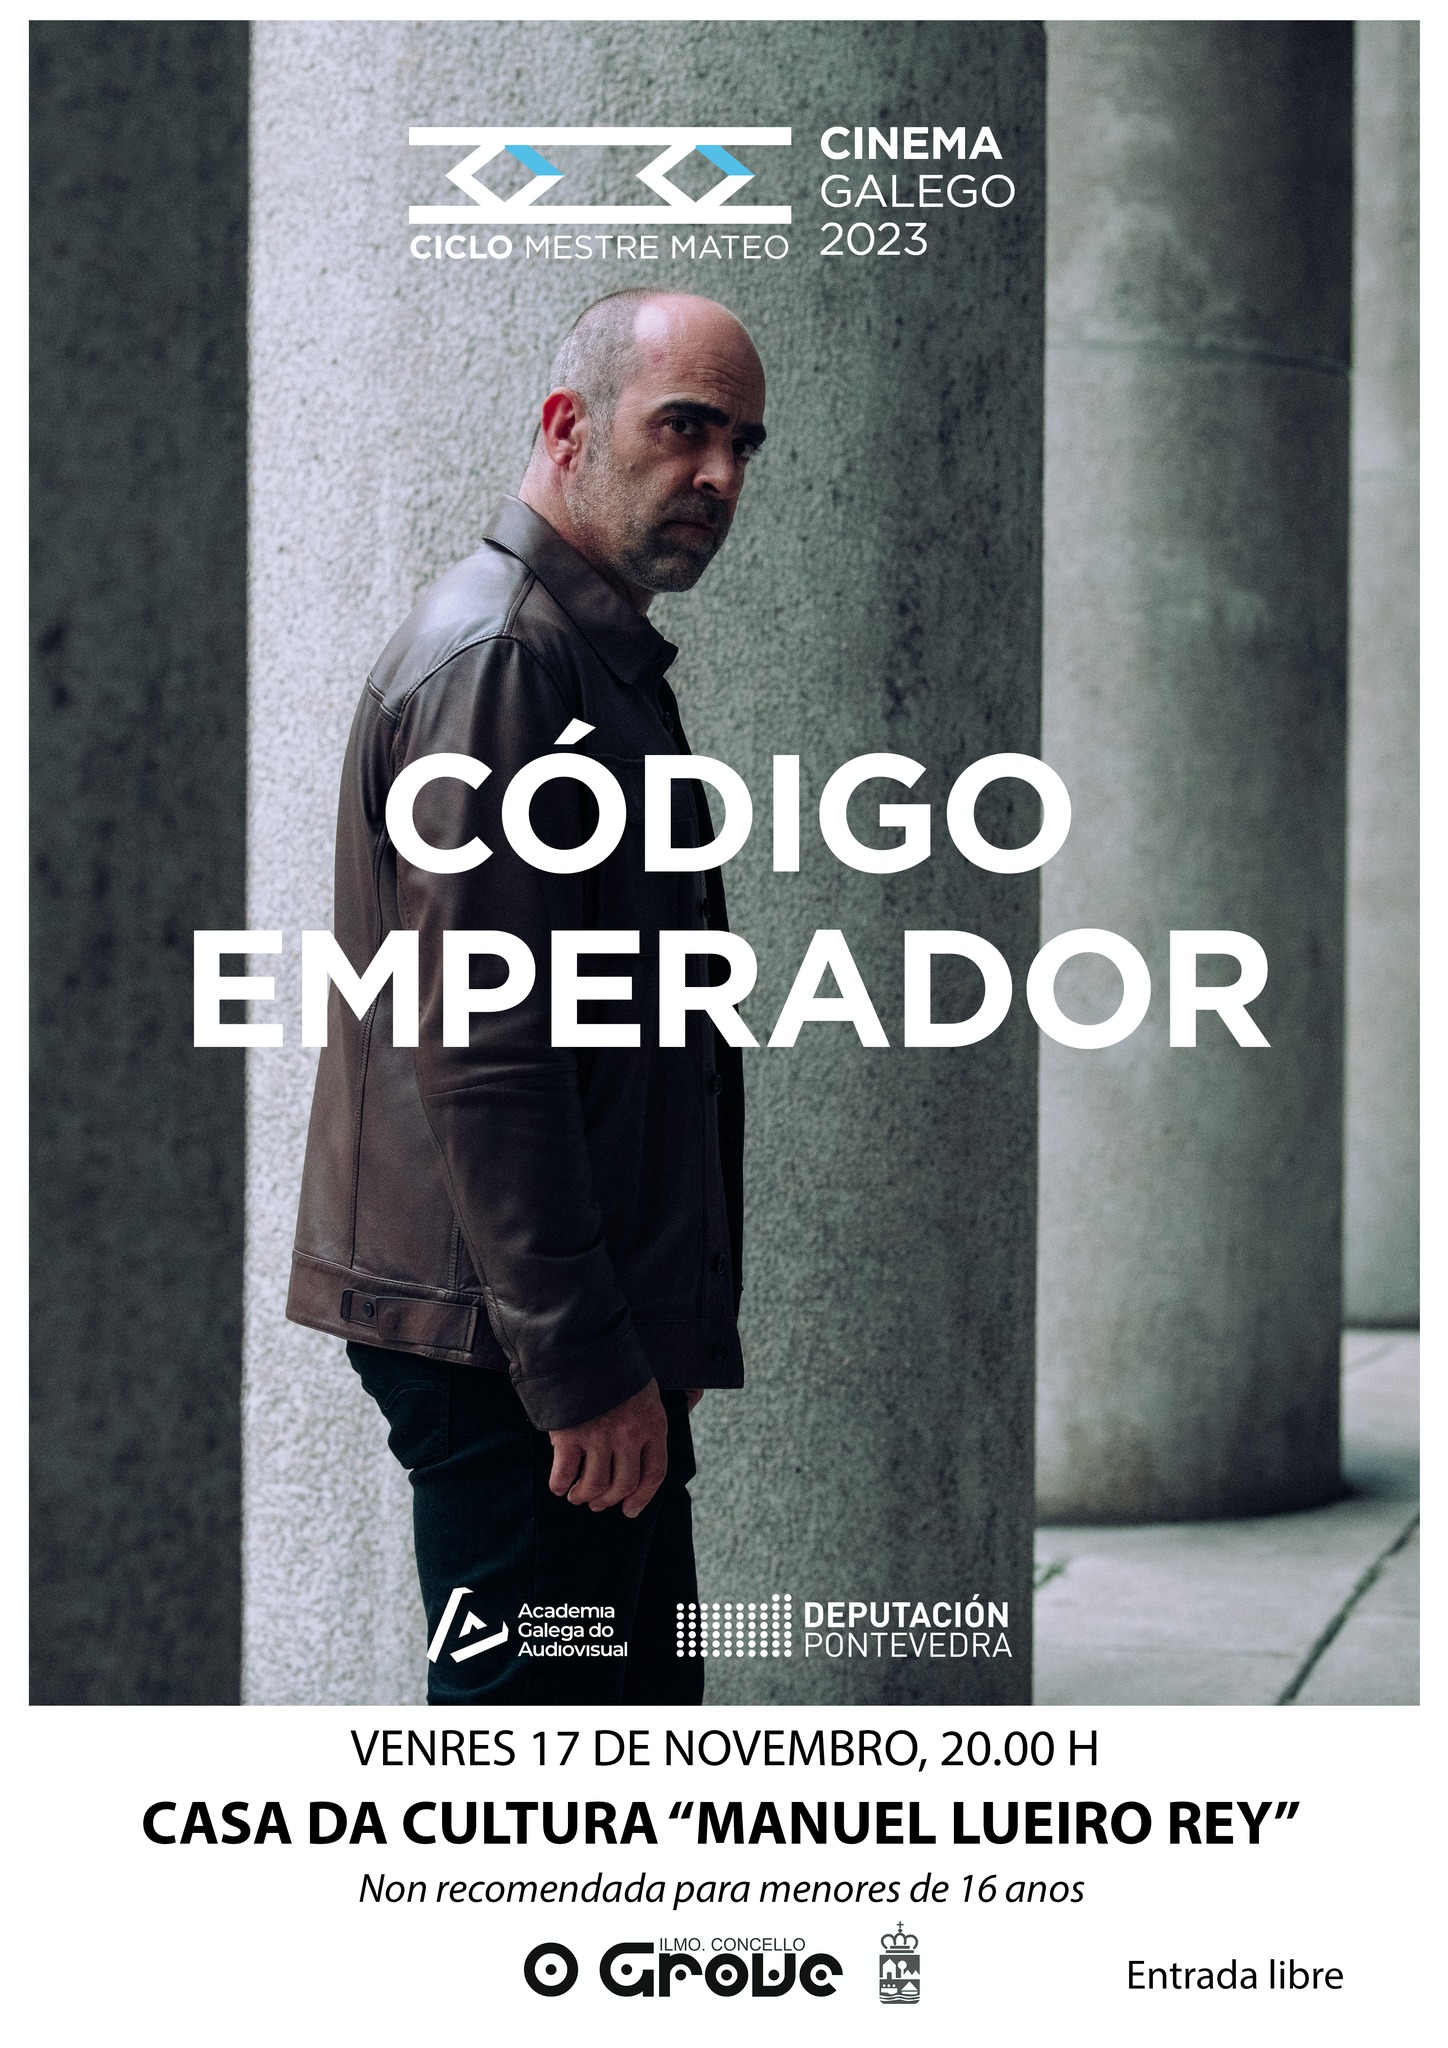 Código Emperador. Ciclo cine galego Mestre Mateo